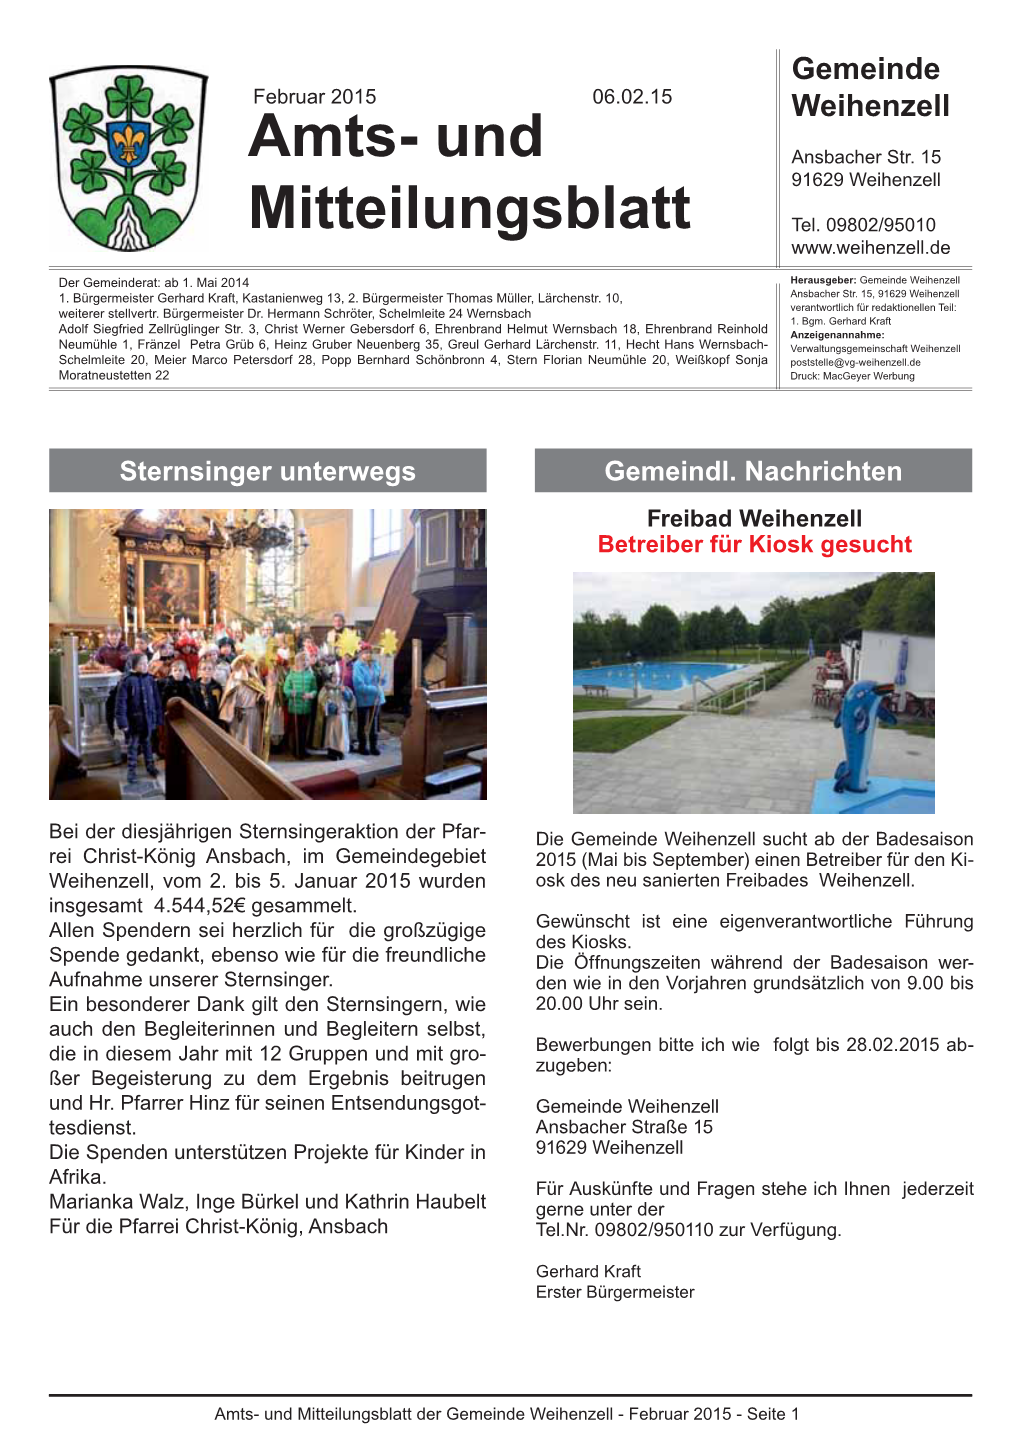 Amts- Und Mitteilungsblatt Der Gemeinde Weihenzell - Februar 2015 - Seite 1 Öffnungszeiten, Termine